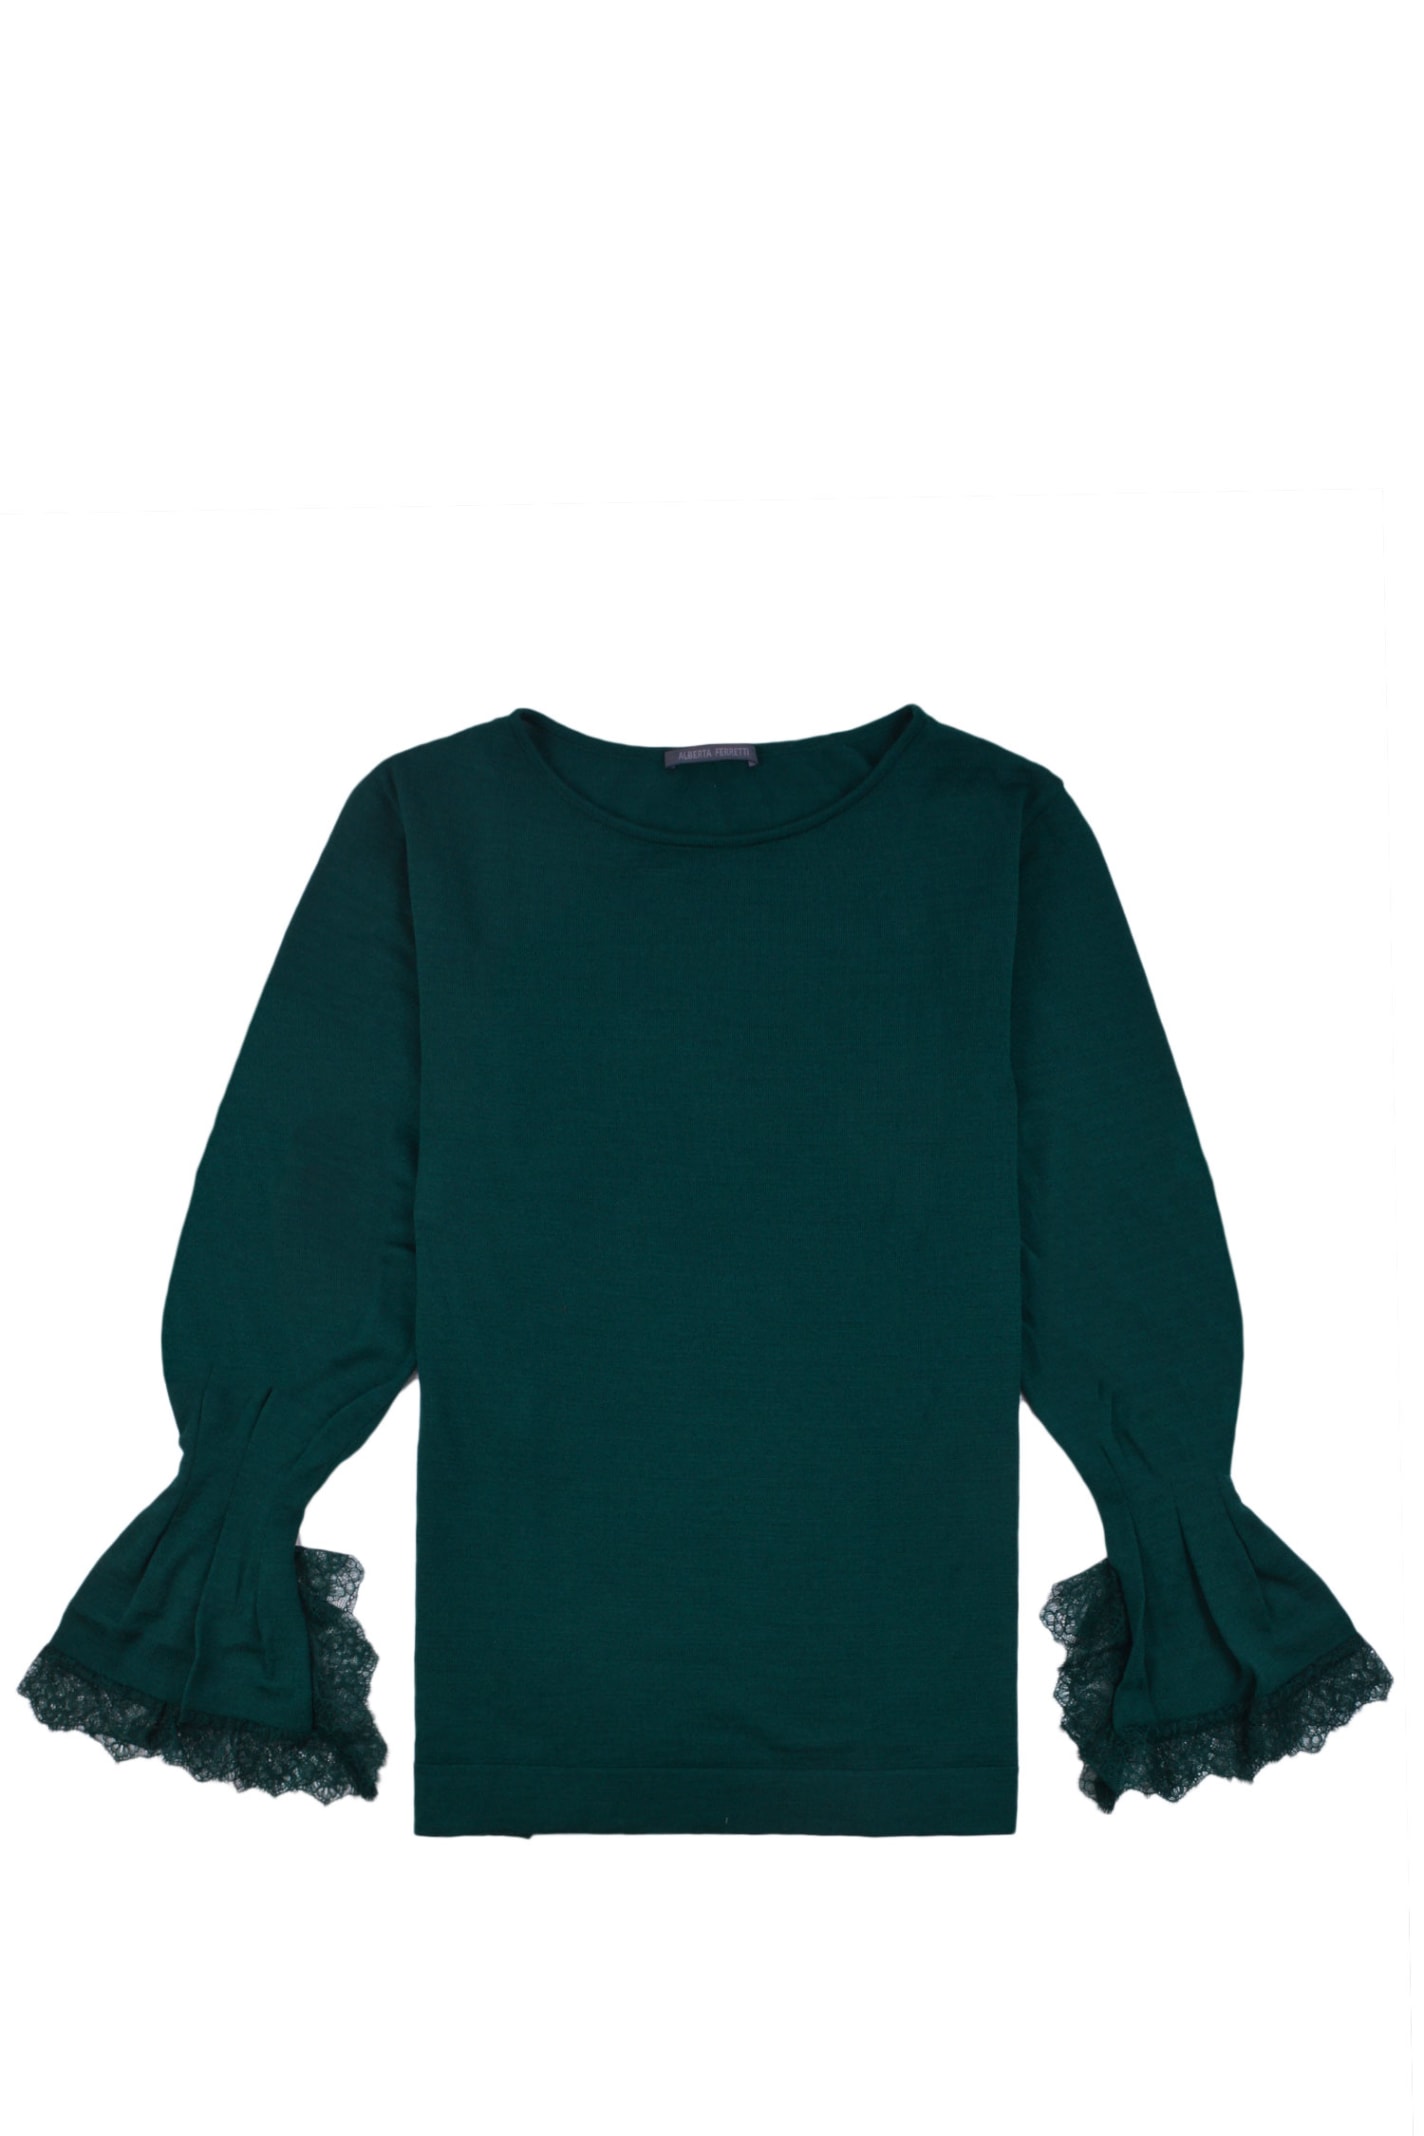 Shop Alberta Ferretti Lace Cuffs Round Neck Plain Sweater In Verdone